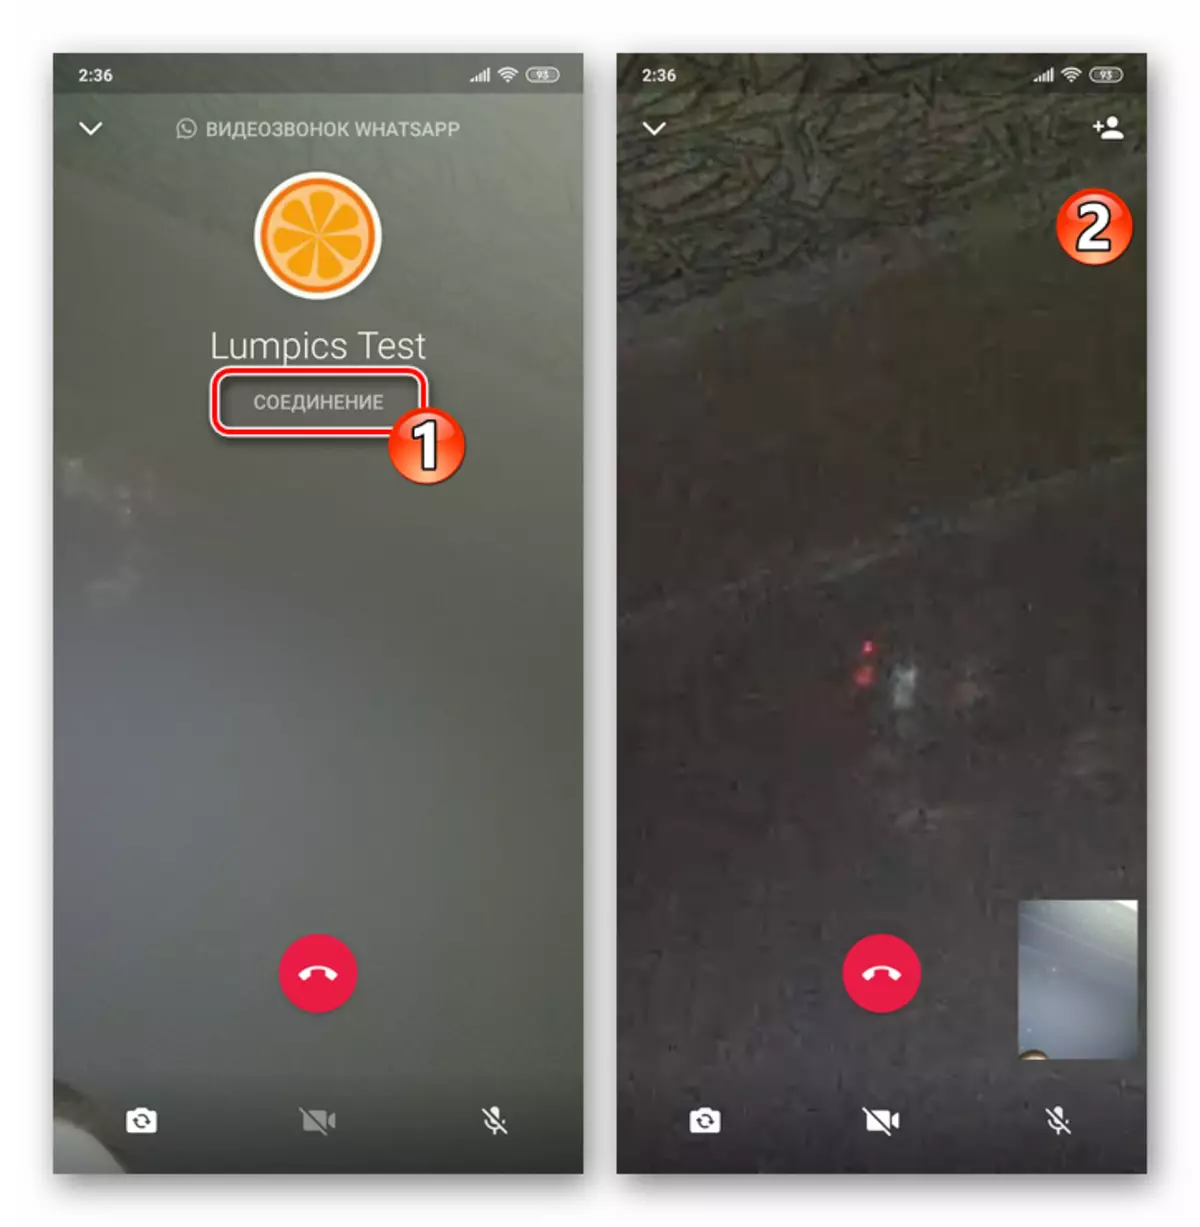 Messenger-д TAB-ийн дуудлагад дуудагдсан Android видео дуудлагын үйл явц